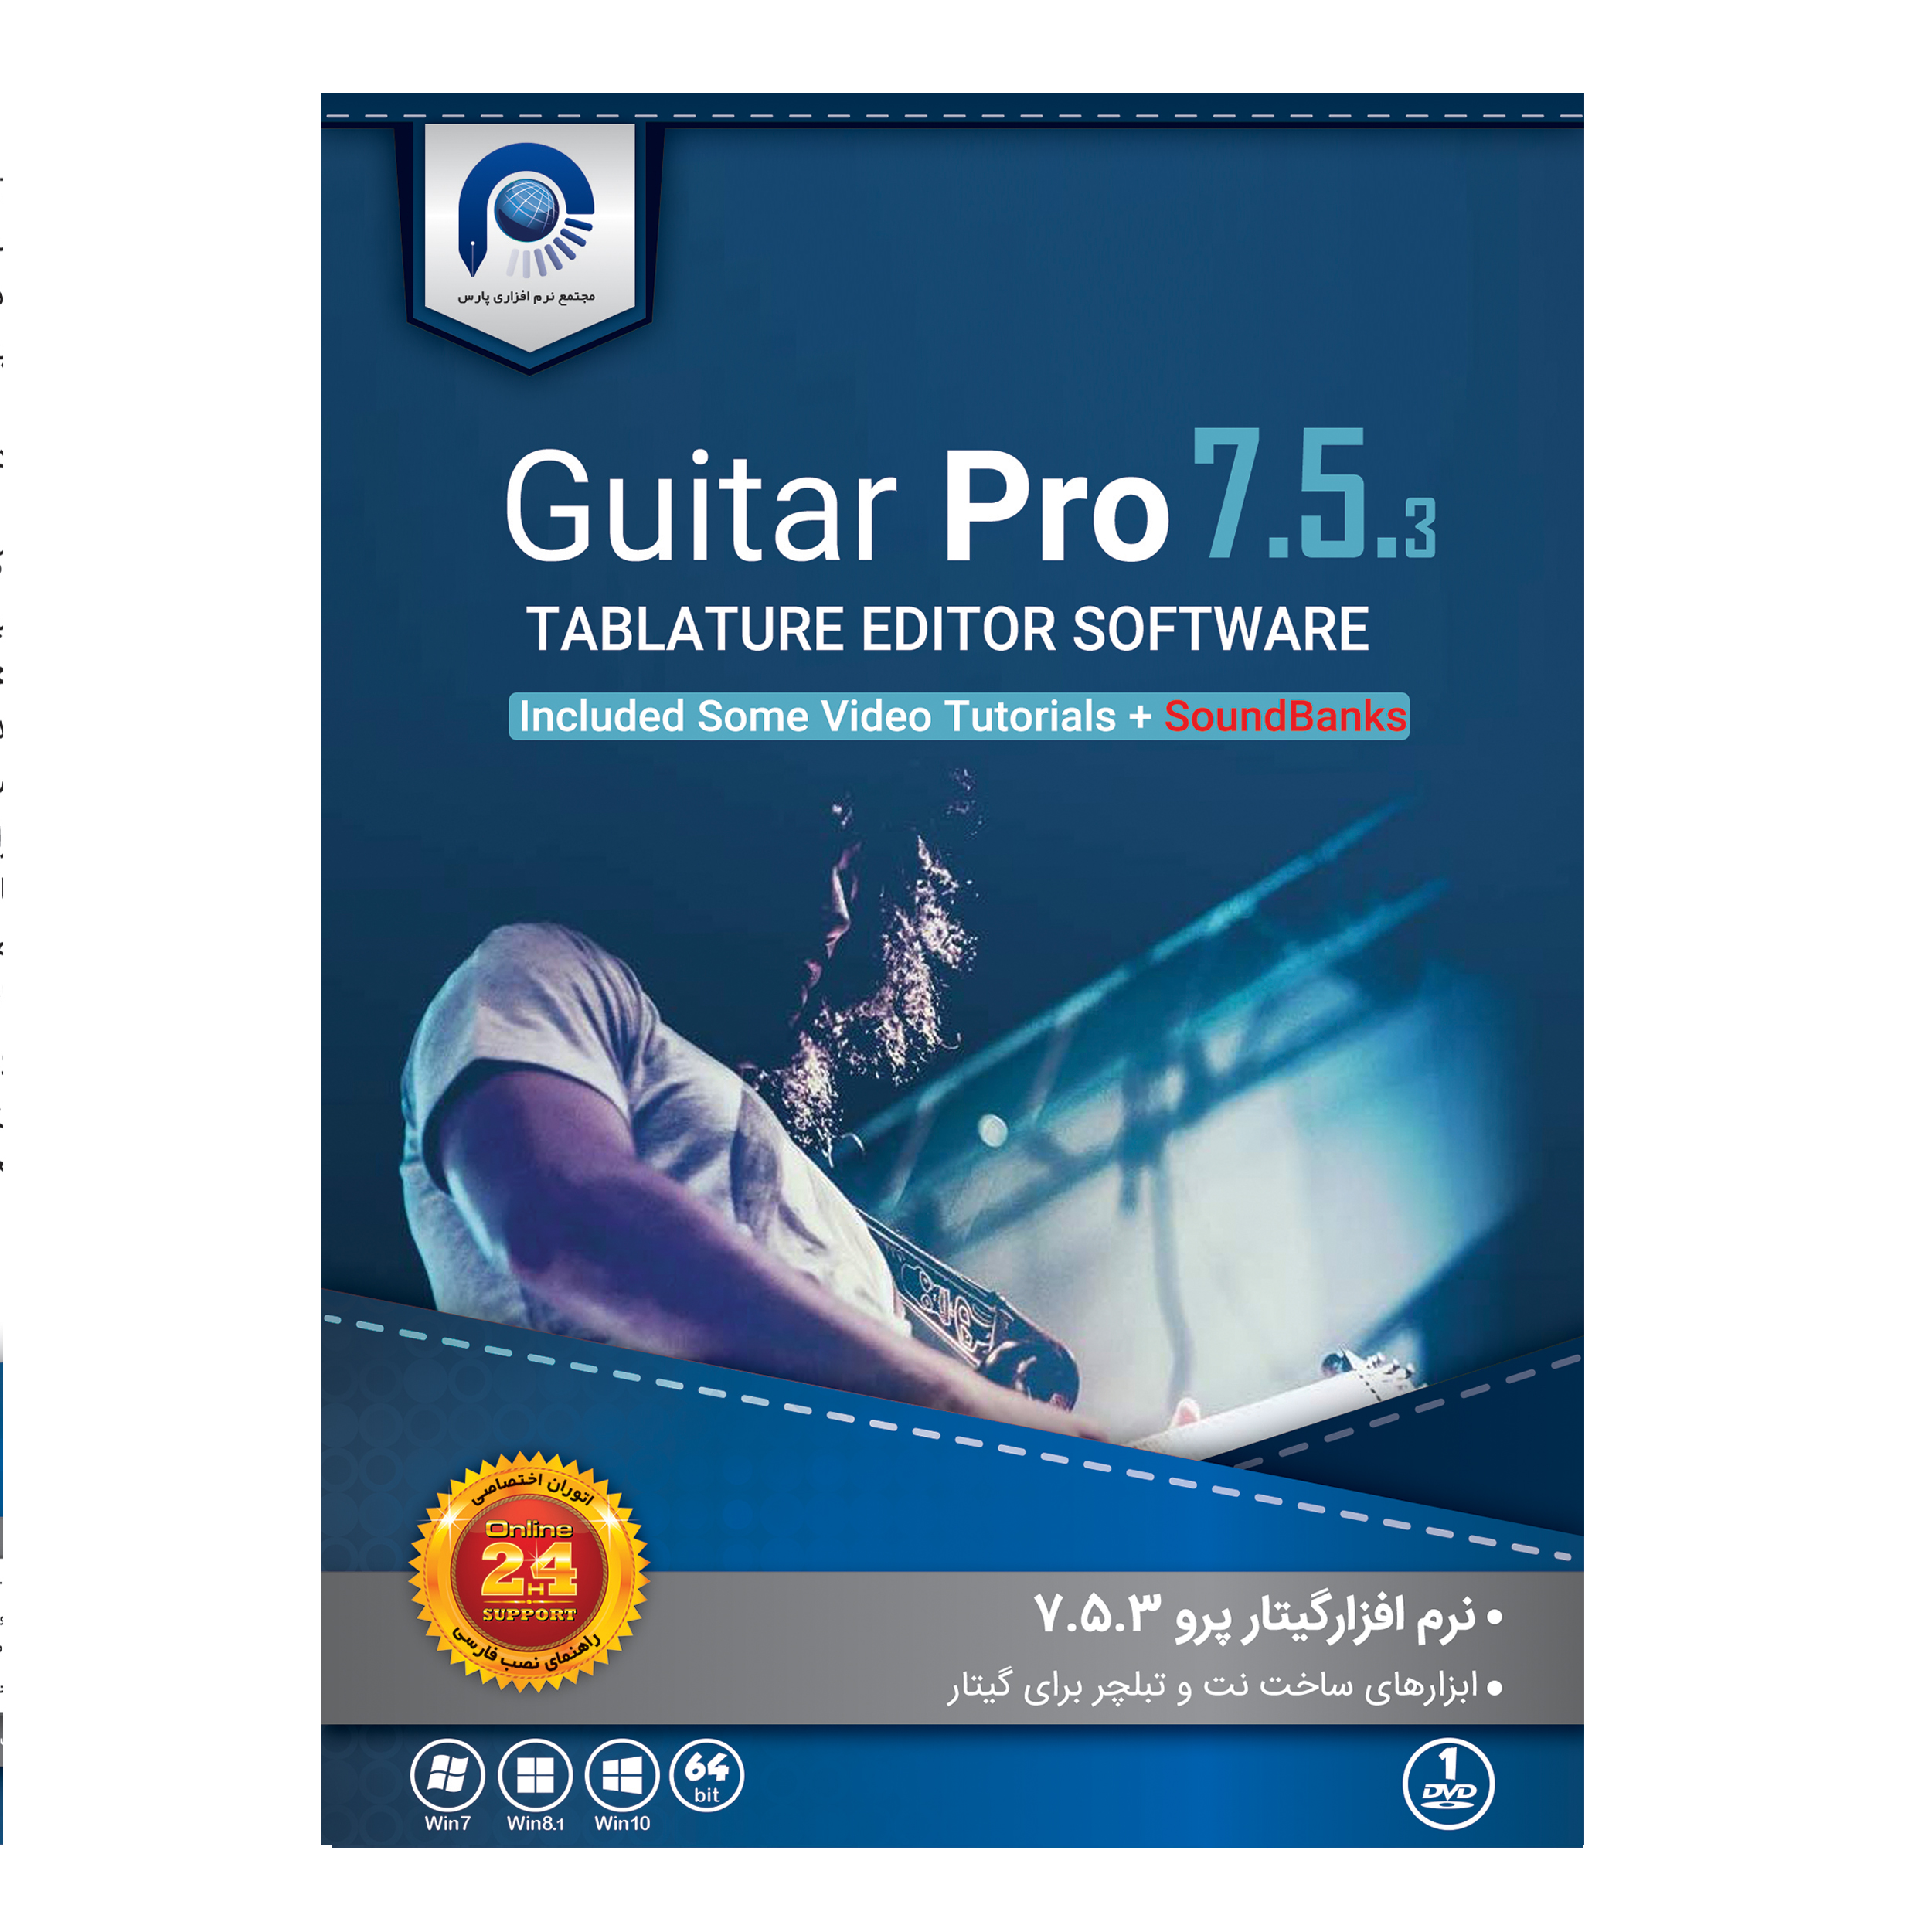 نرم افزار Guitar Pro 7.5.3 نشر مجتمع نرم افزاری پارس